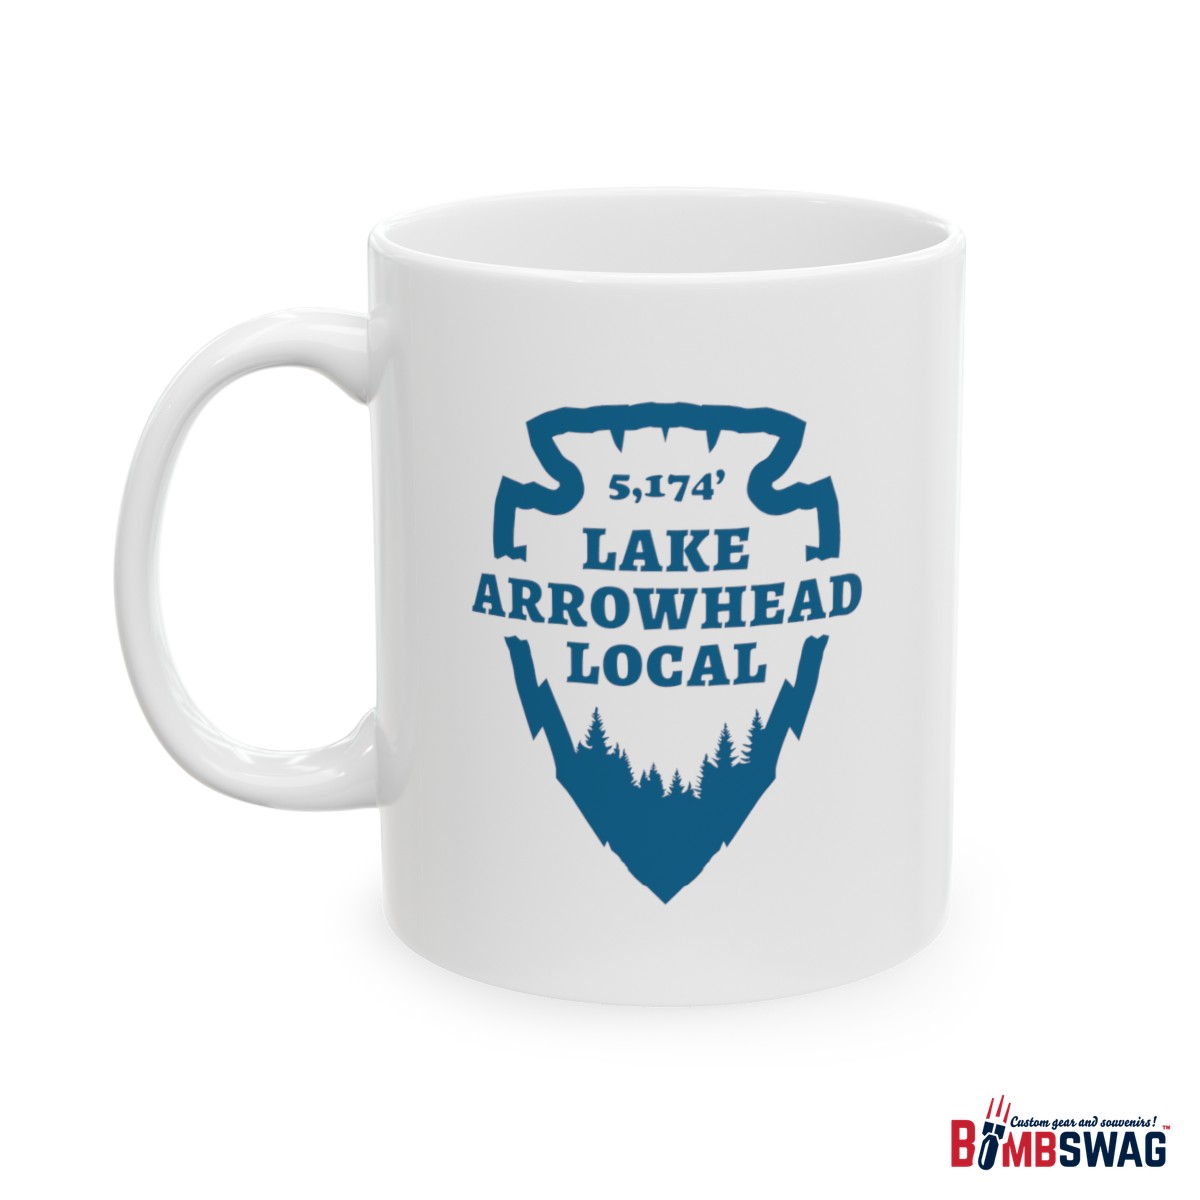 lake arrowhead local mug with our signature arrowhead in blue on white design